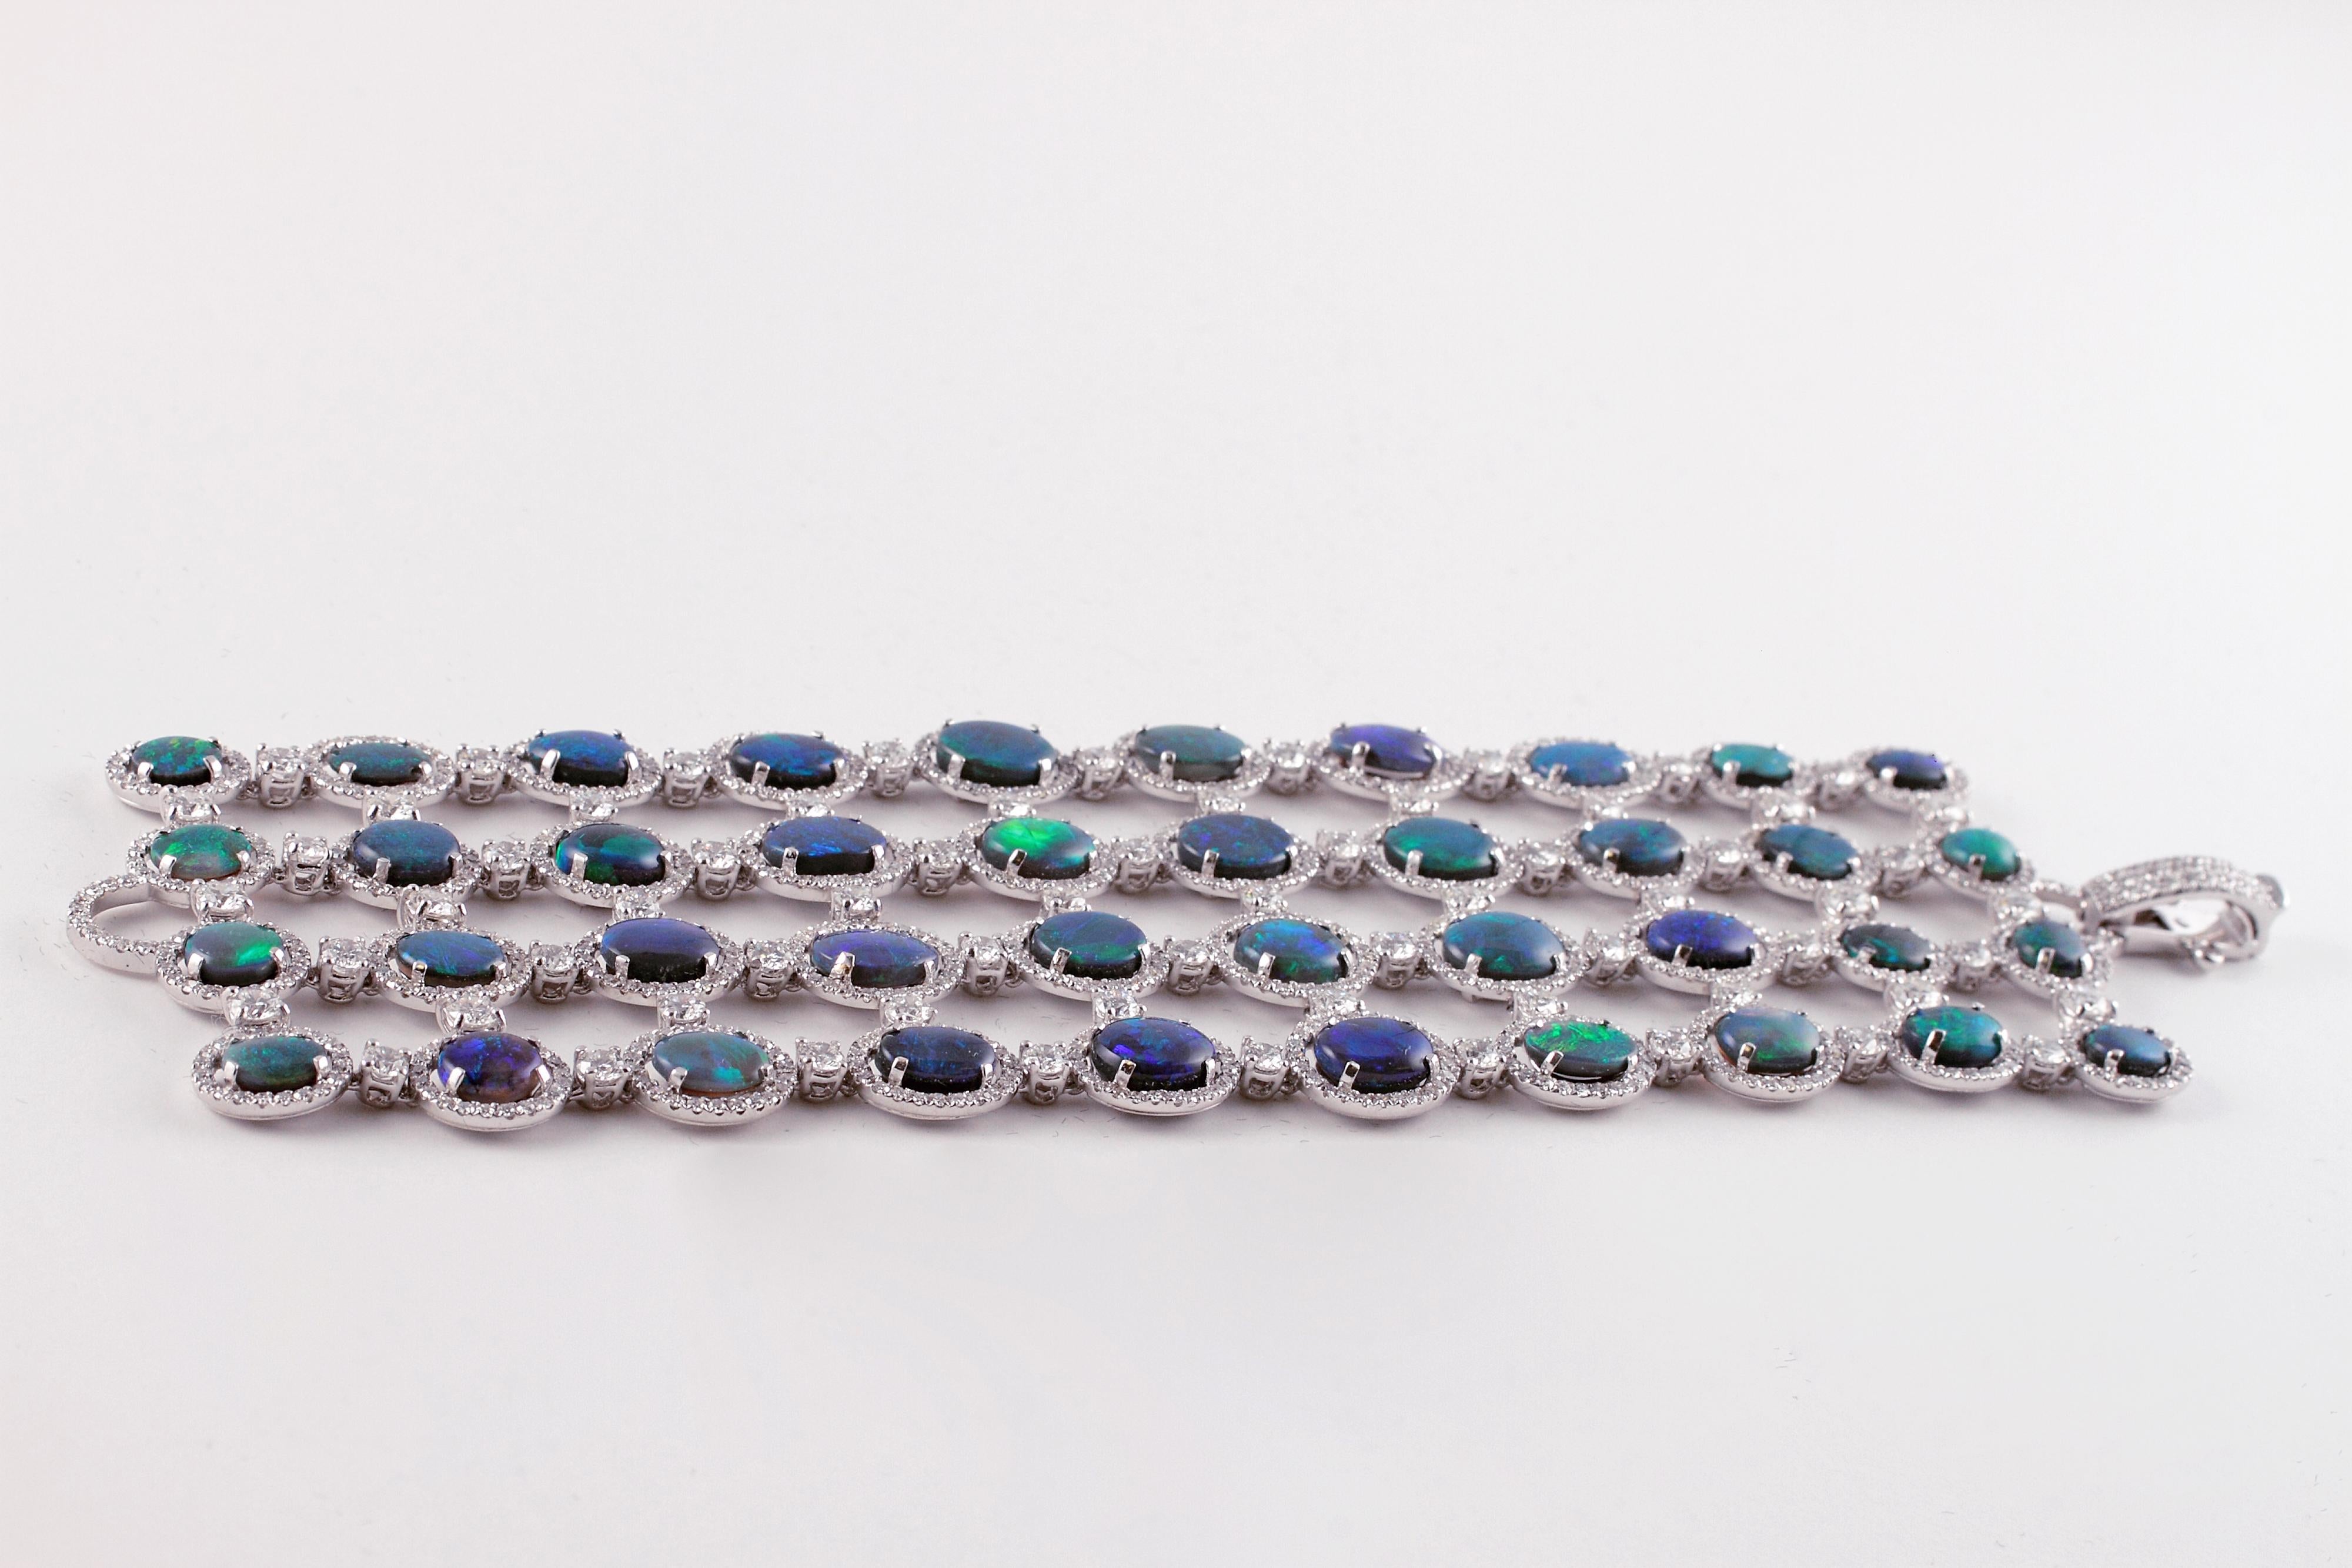 Das exquisite Farbenspiel dieser atemberaubenden Opale ist ein wahrer Augenschmaus!  Dieses Armband wurde von dem famosen Schmuckdesigner David Morris in London handgefertigt.  Er ist mit 4 Reihen verschieden großer und farbiger Opale besetzt, die